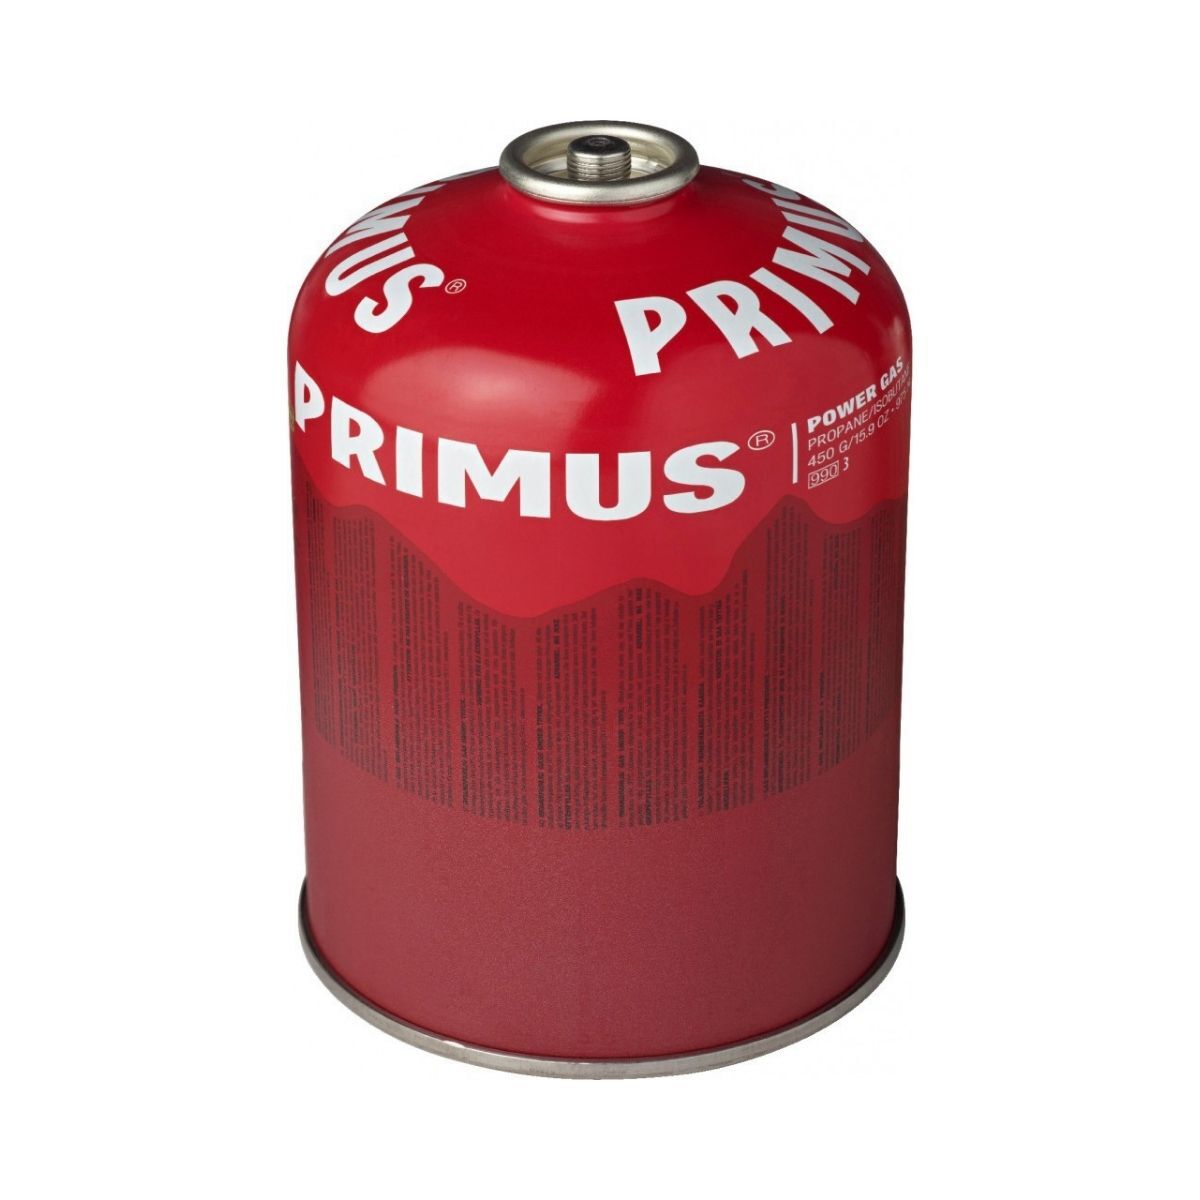 Primus Power Gas 450 g L2 - Kartusz gazowy | Hardloop